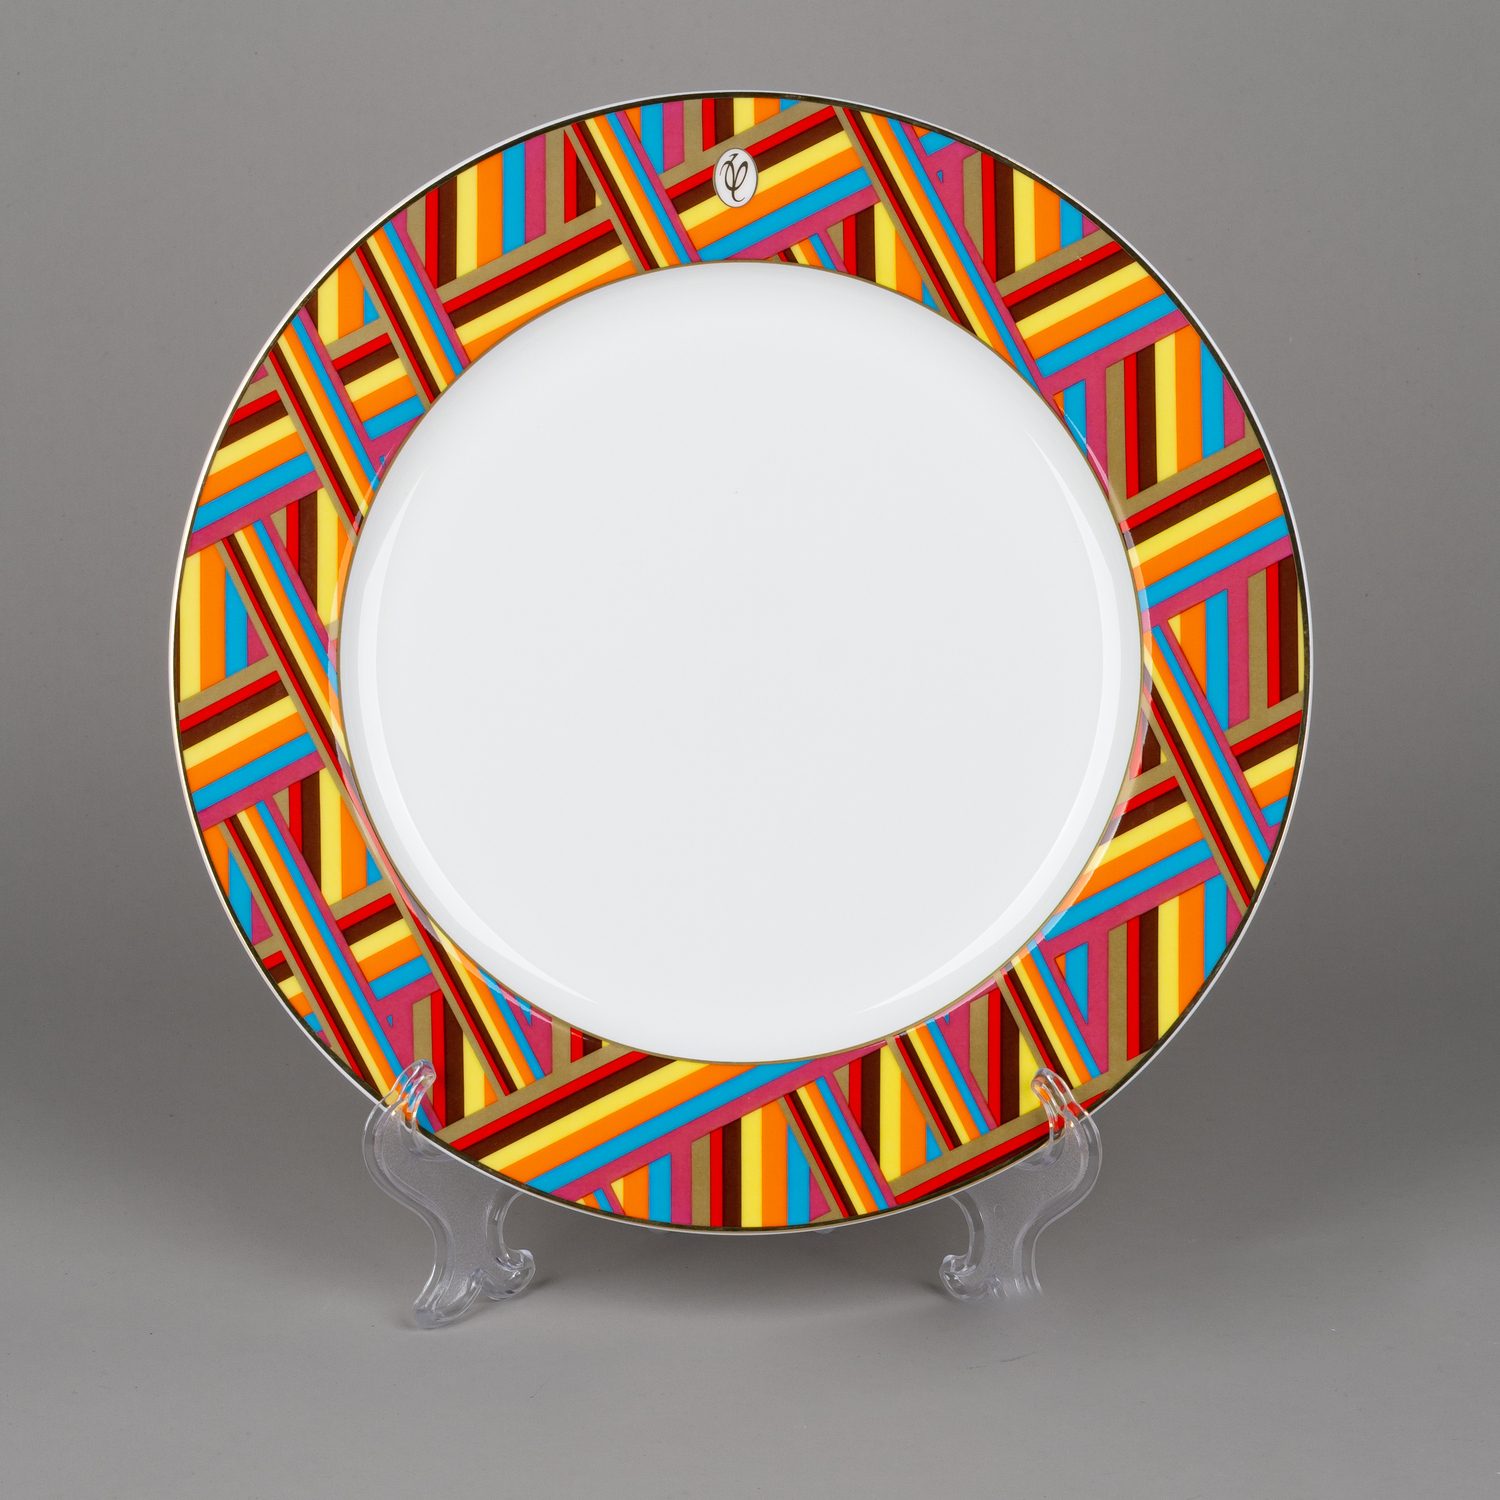 Тарелка для закусок с геометрическим орнаментом.<br>Россия, автор - Валентин Юдашкин, 2015 год.